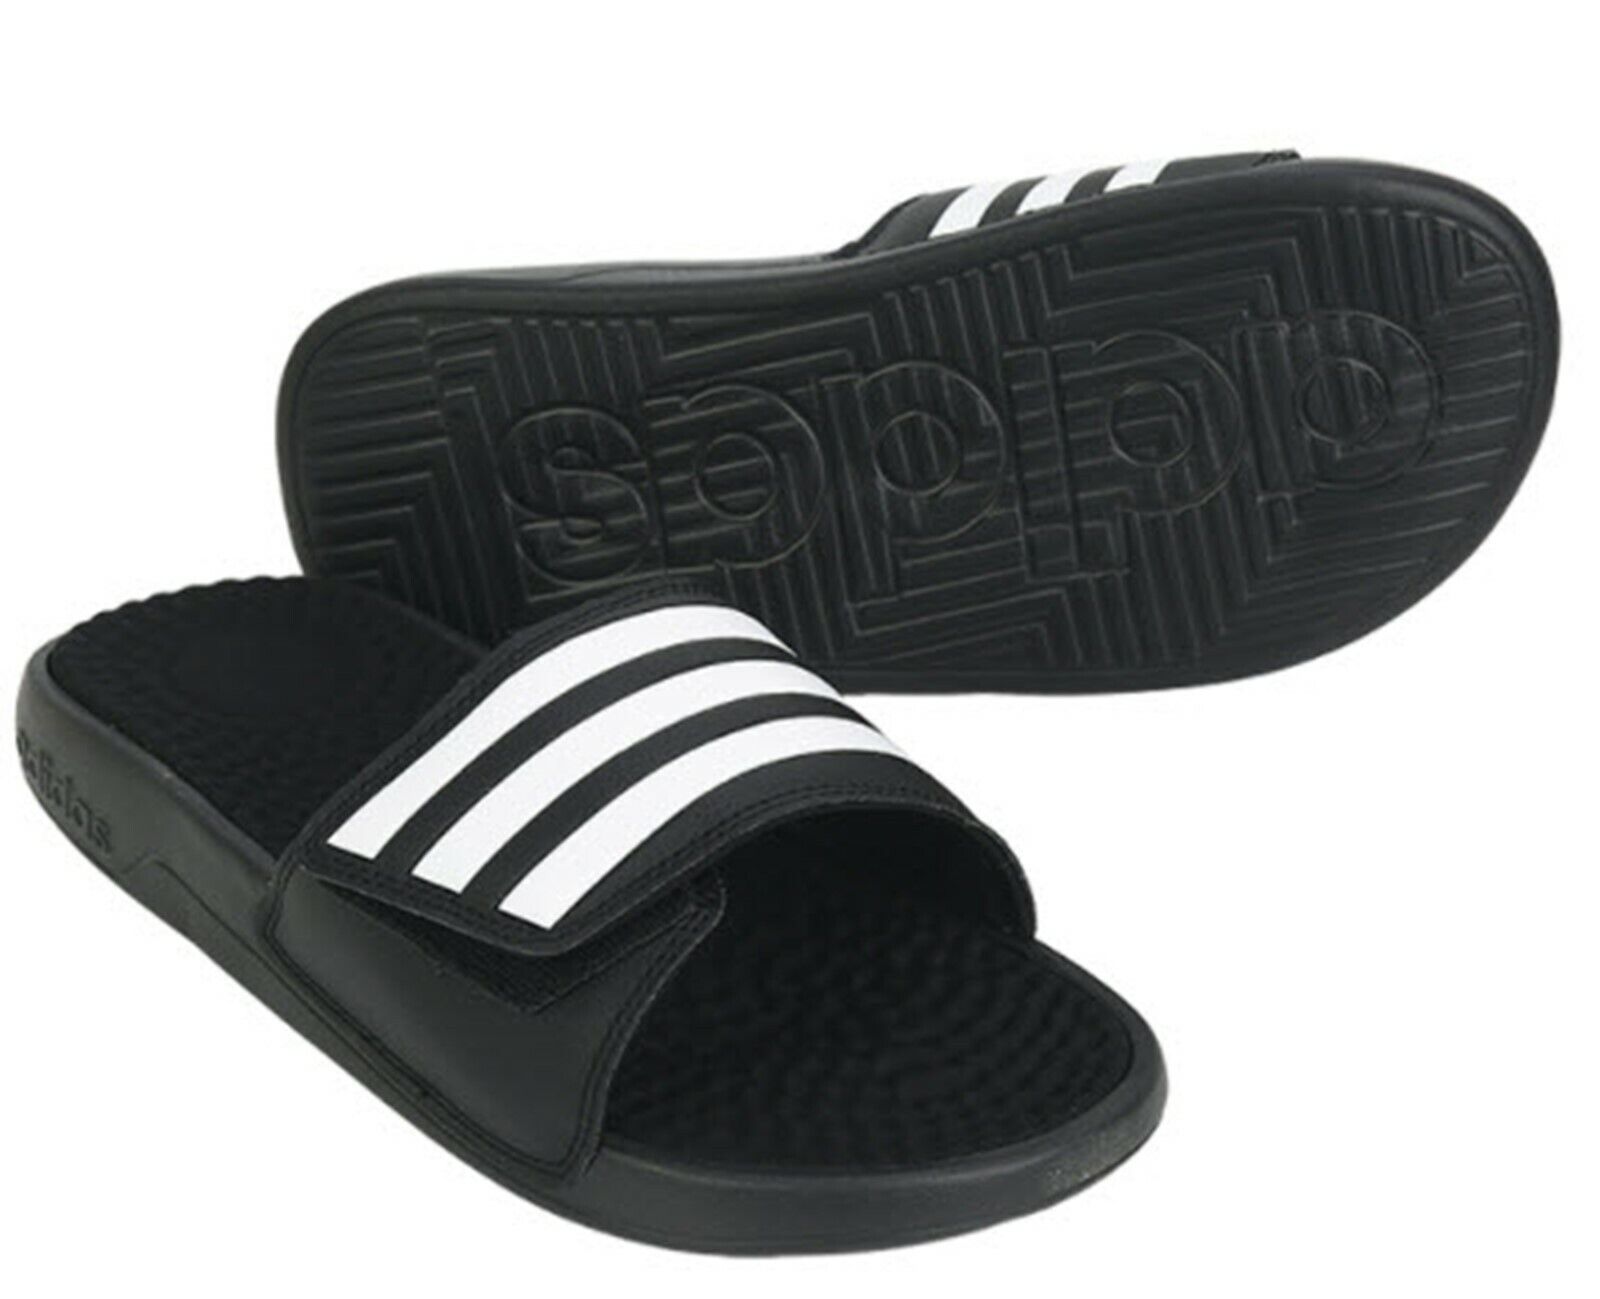 Blootstellen verder Microcomputer Adidas Men Adissage TND Slipper Black Slide Shoes Flip-Flops GYM Sandals  F35565 | eBay